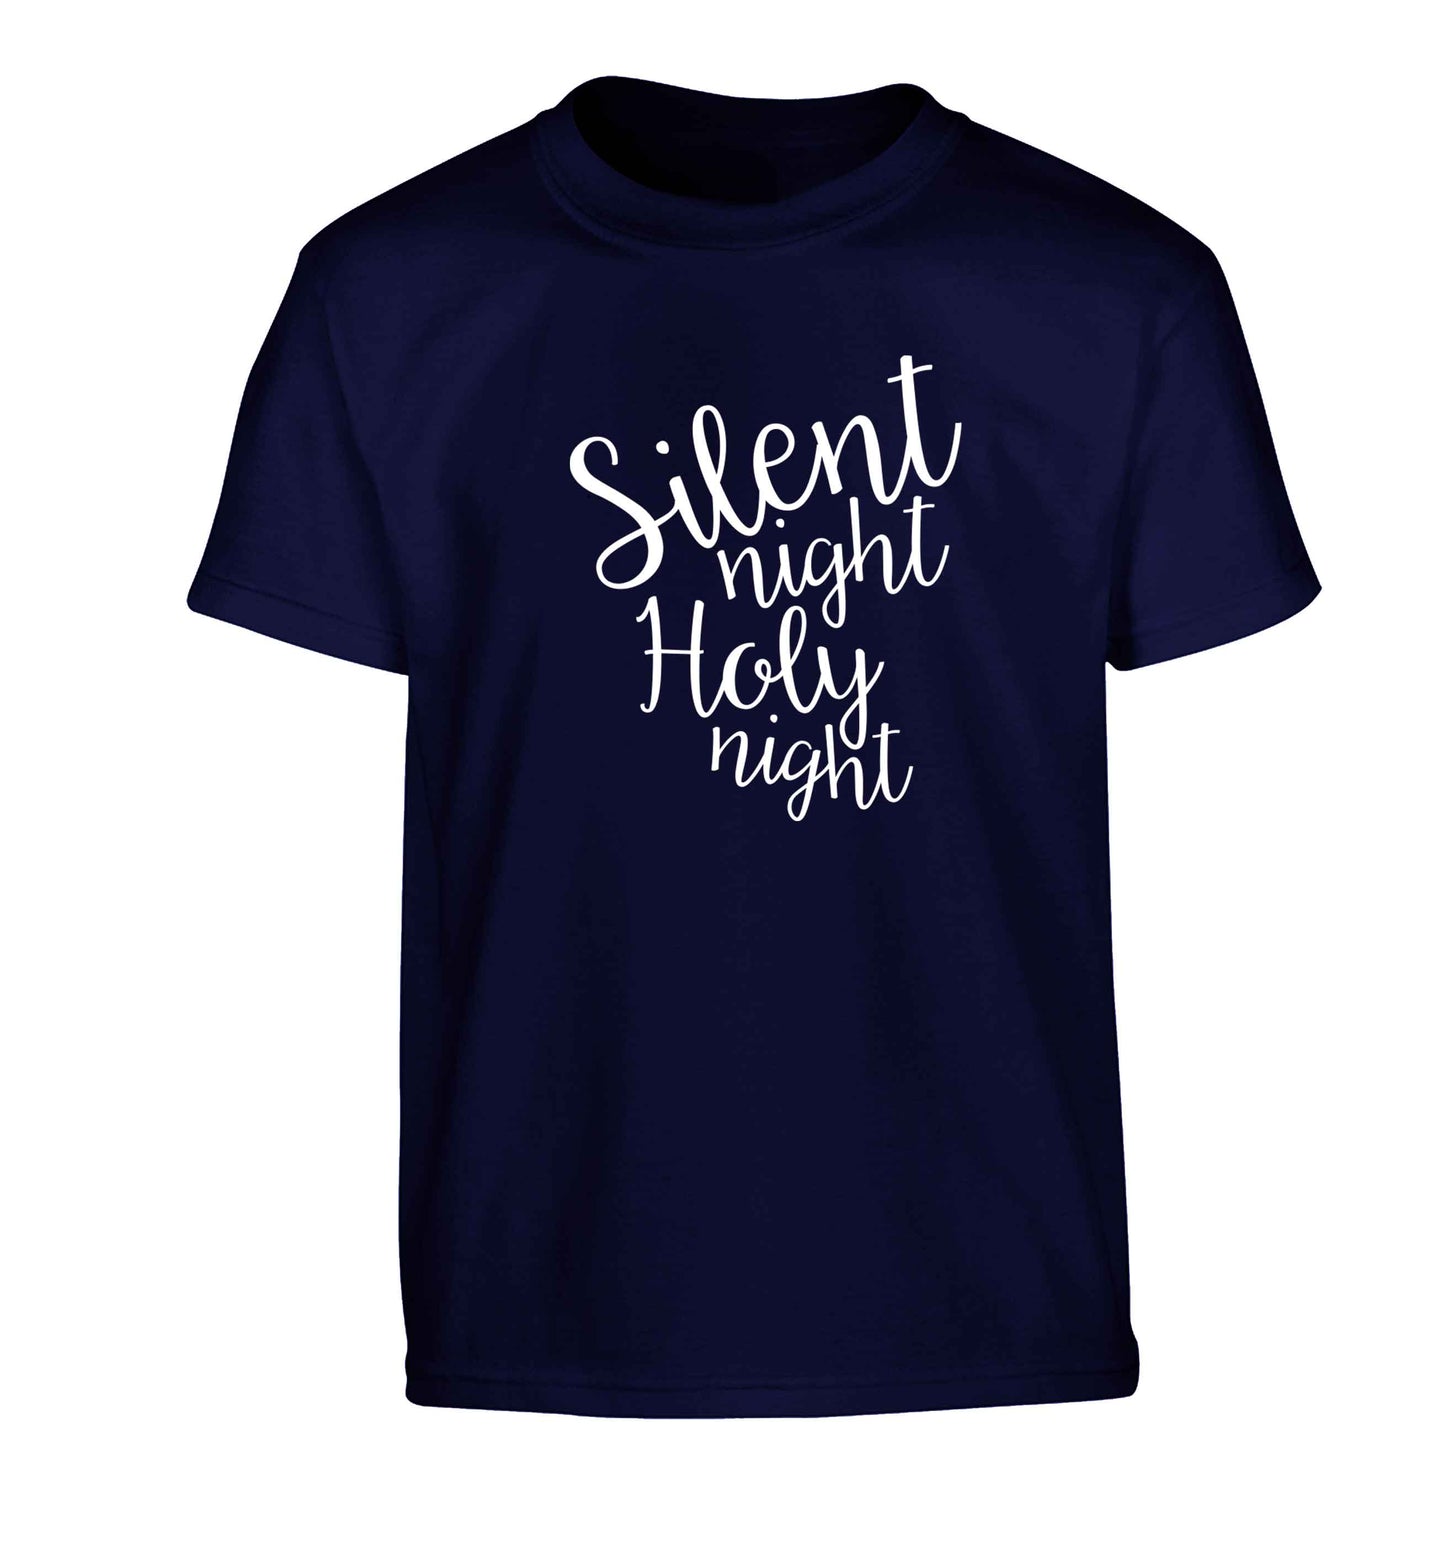 Silent night holy night Children's navy Tshirt 12-13 Years